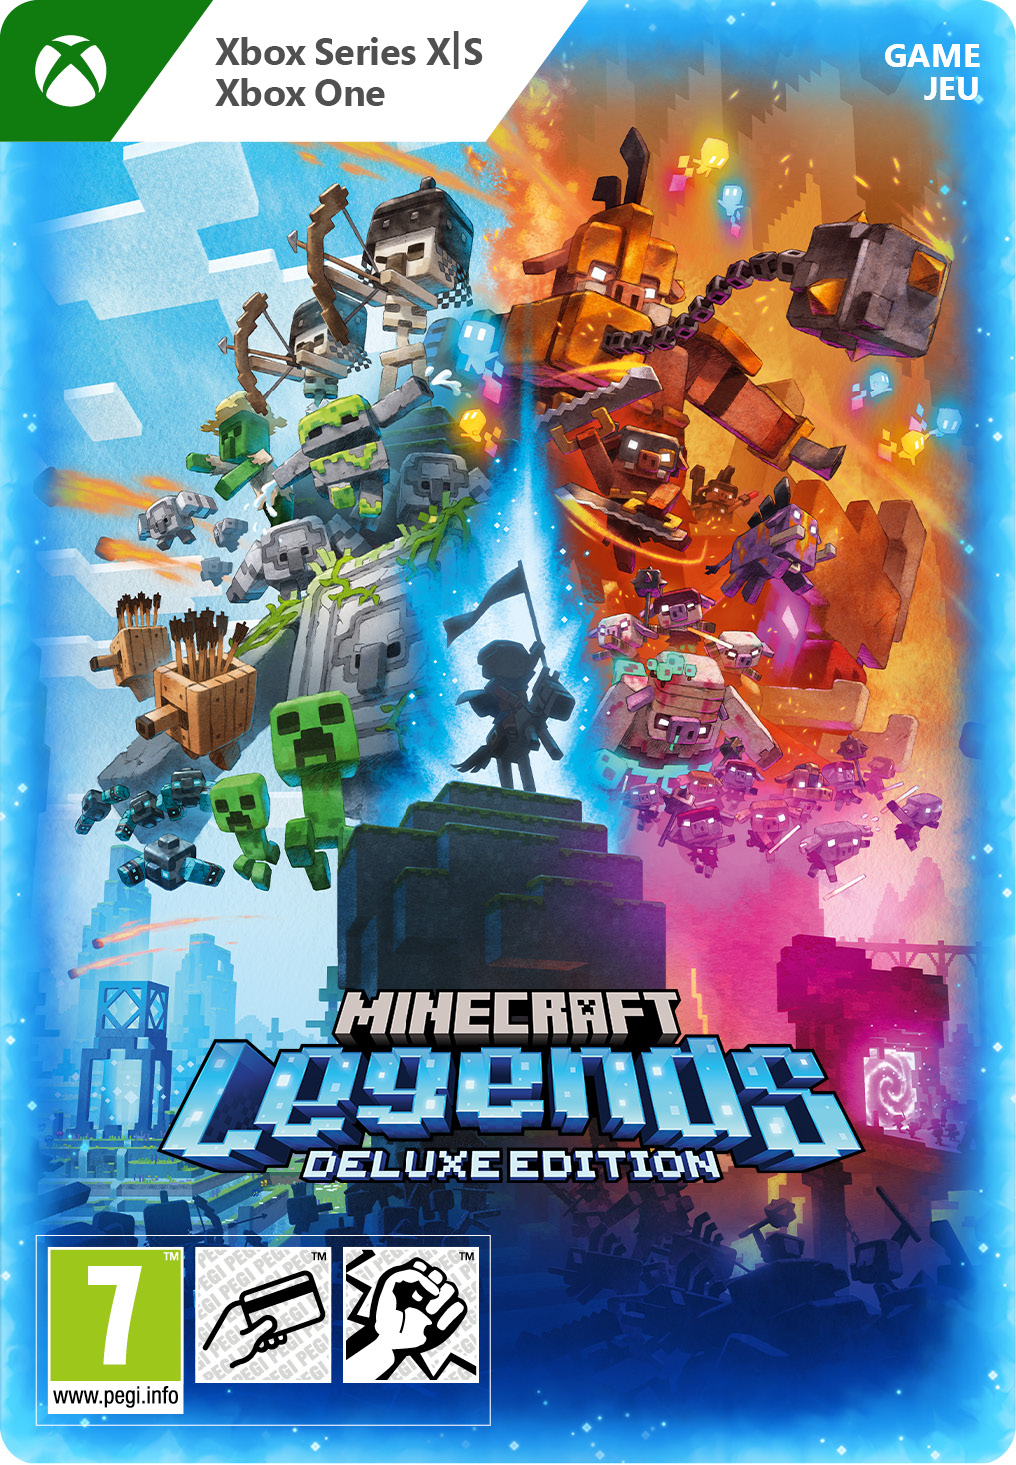 Minecraft Legends Deluxe